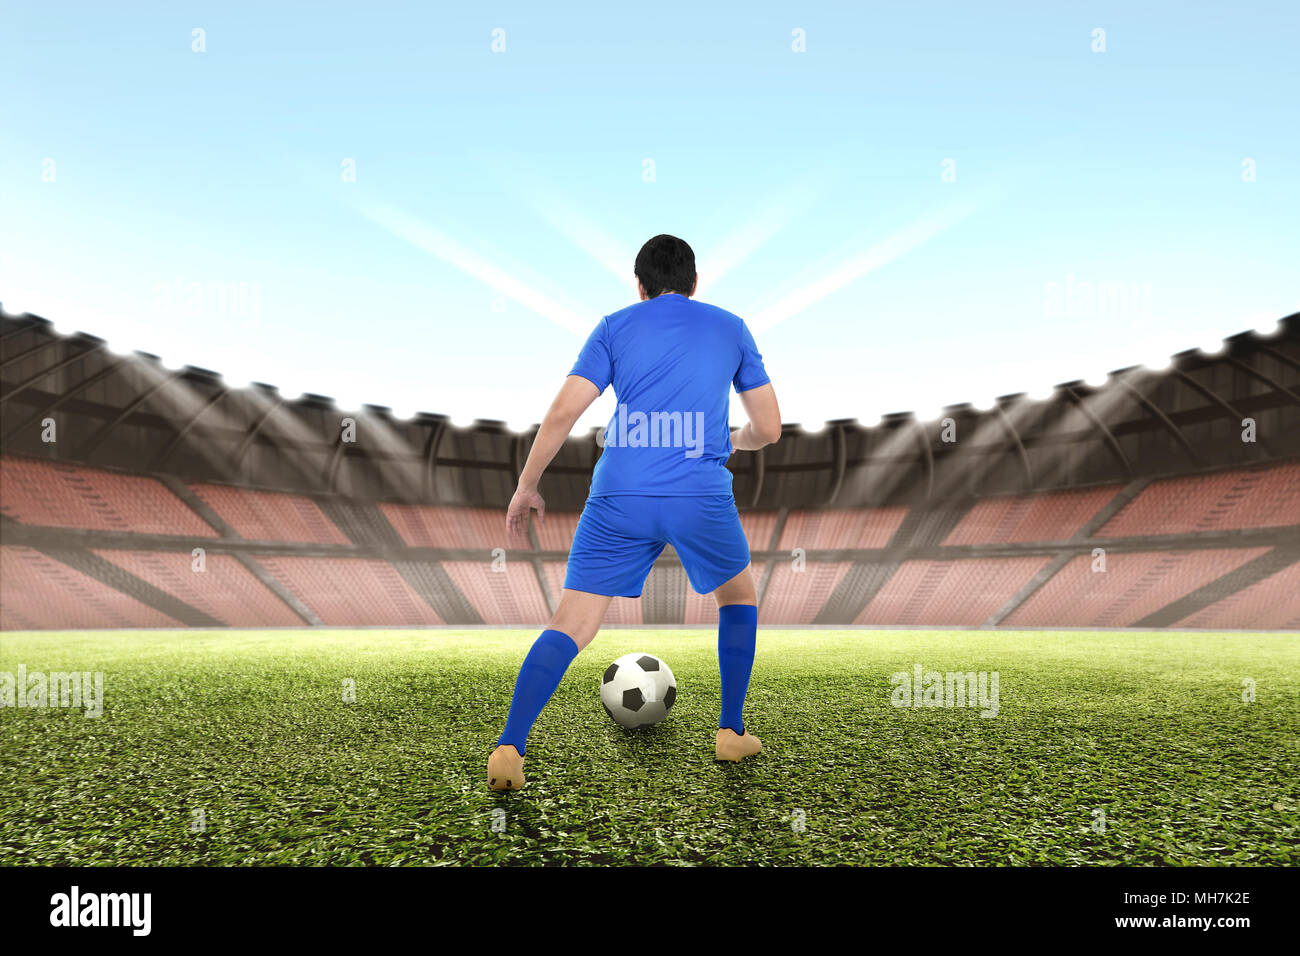 Professional asian giocatore di football dribbling la palla sul campo Foto Stock